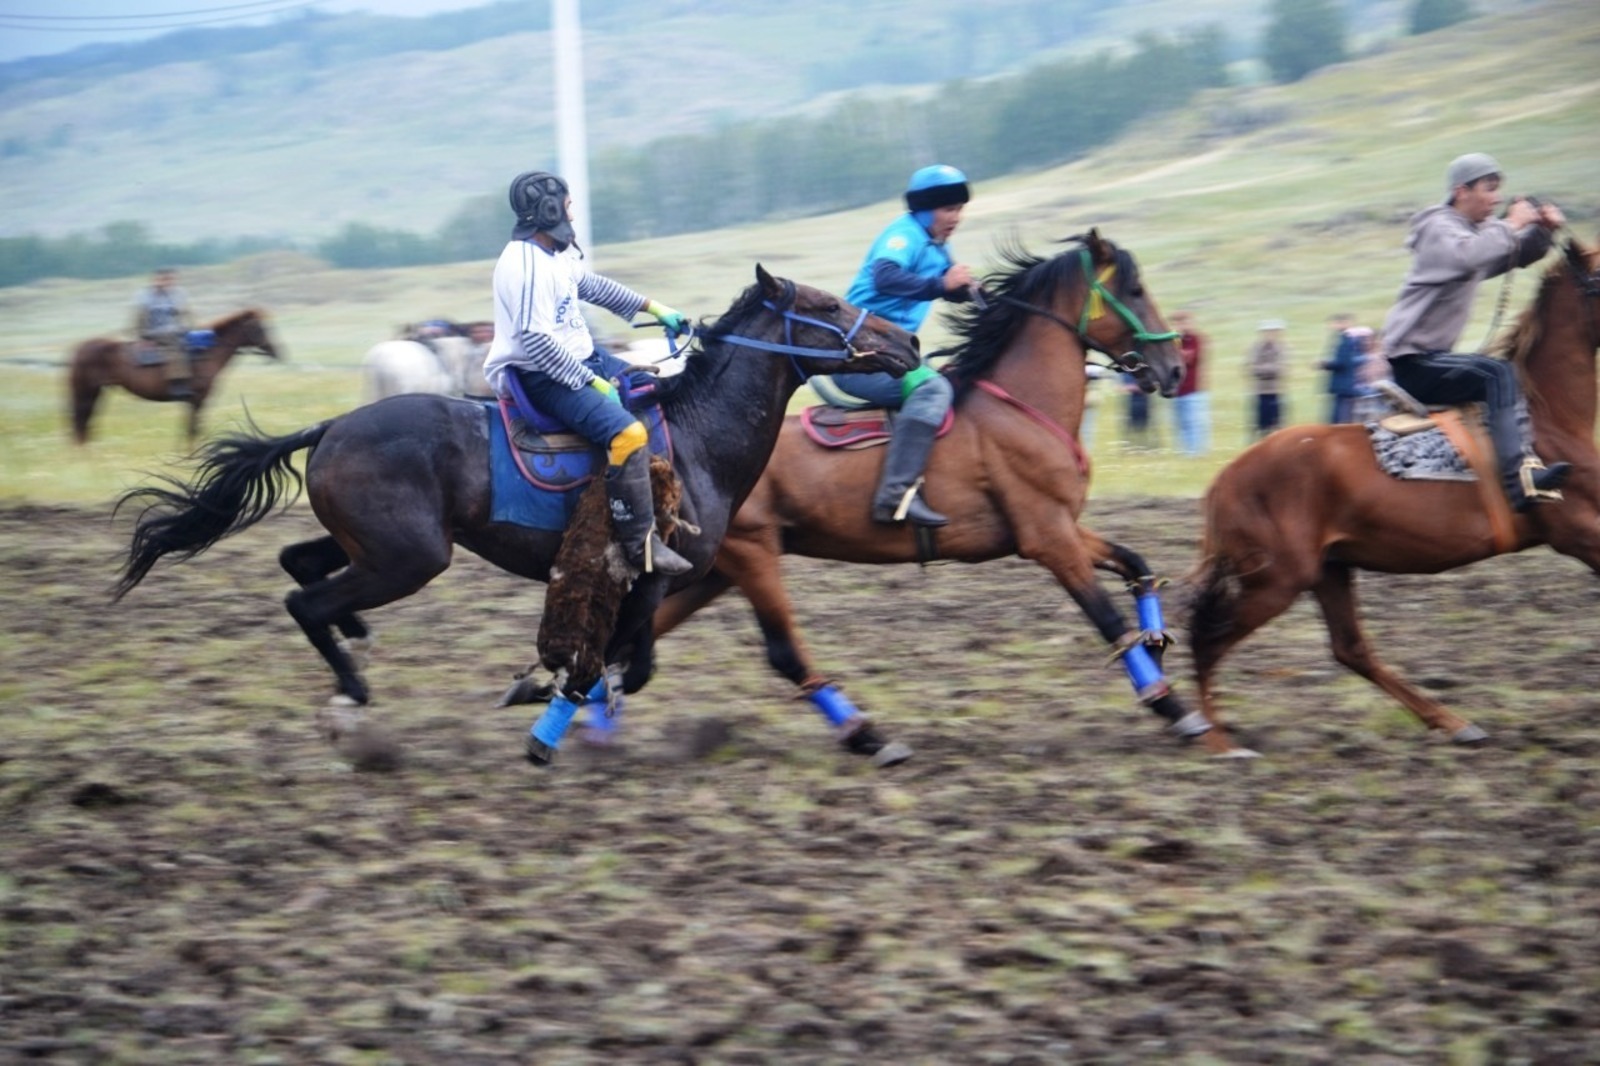 Фестиваль башкирской лошади в Баймакском районе начался с козлодрания